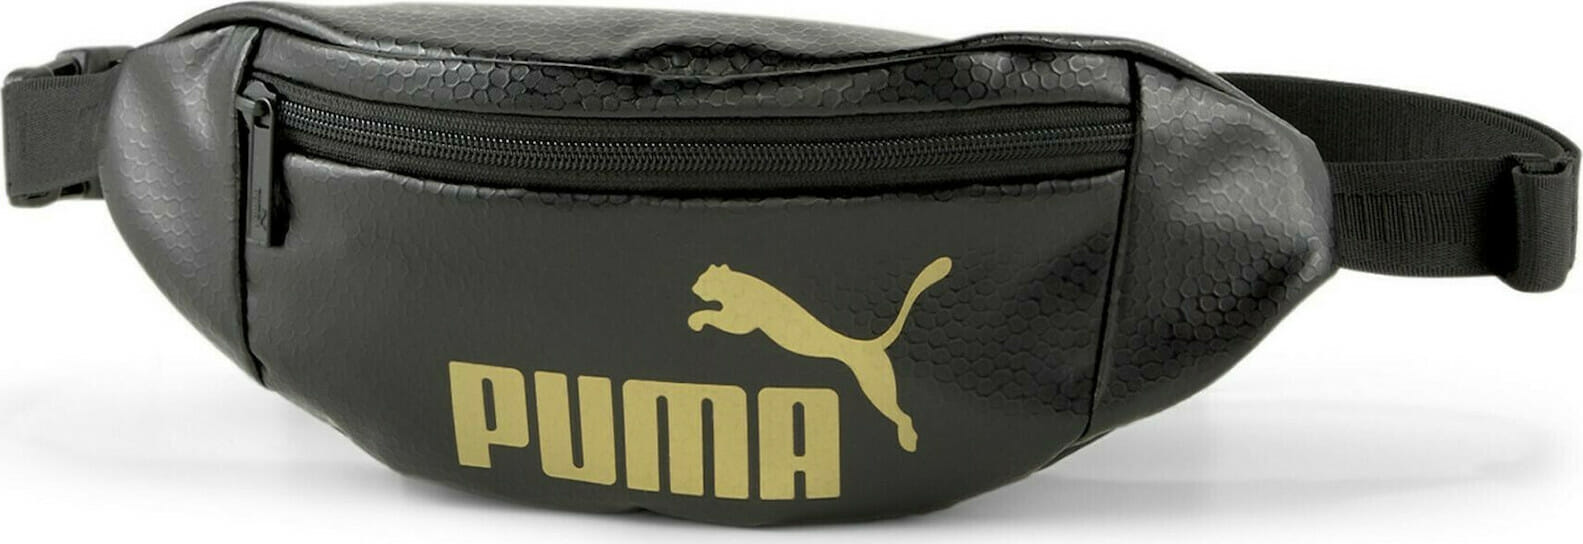 puma core up waistbag